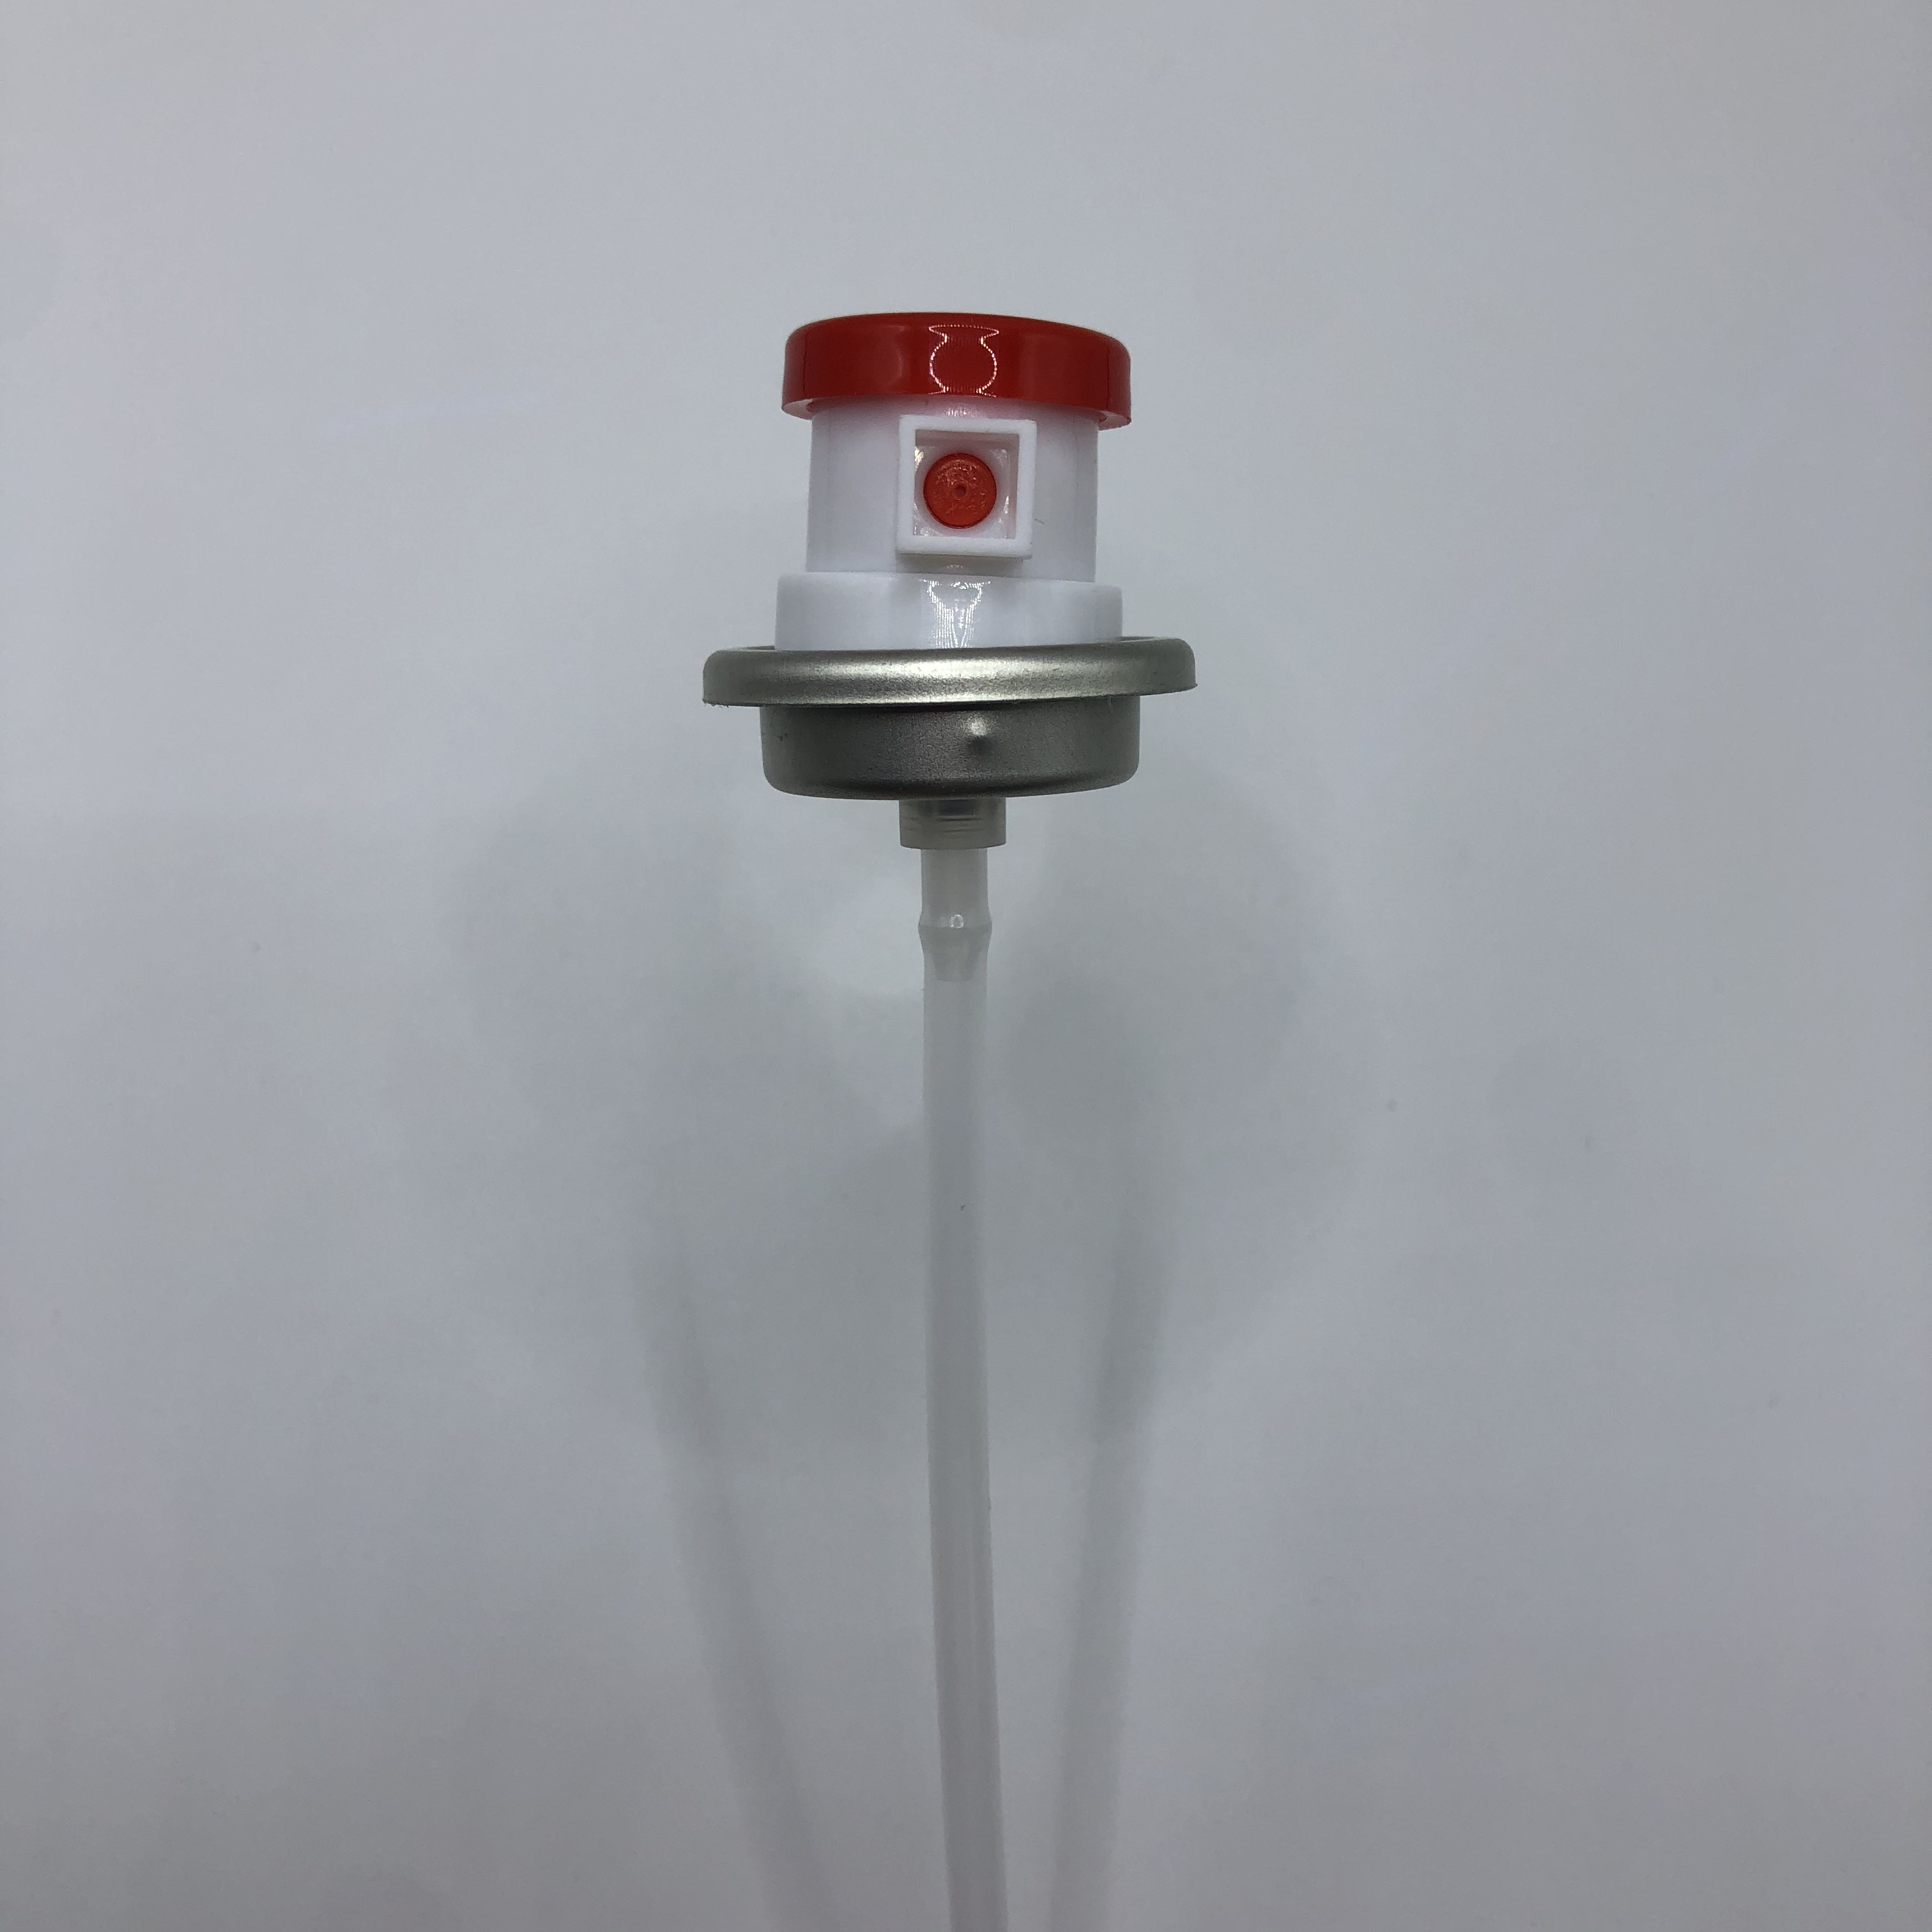 Průmyslový aerosolový dávkovač s rozprašovacím ventilem pro velké zatížení pro komerční aplikace